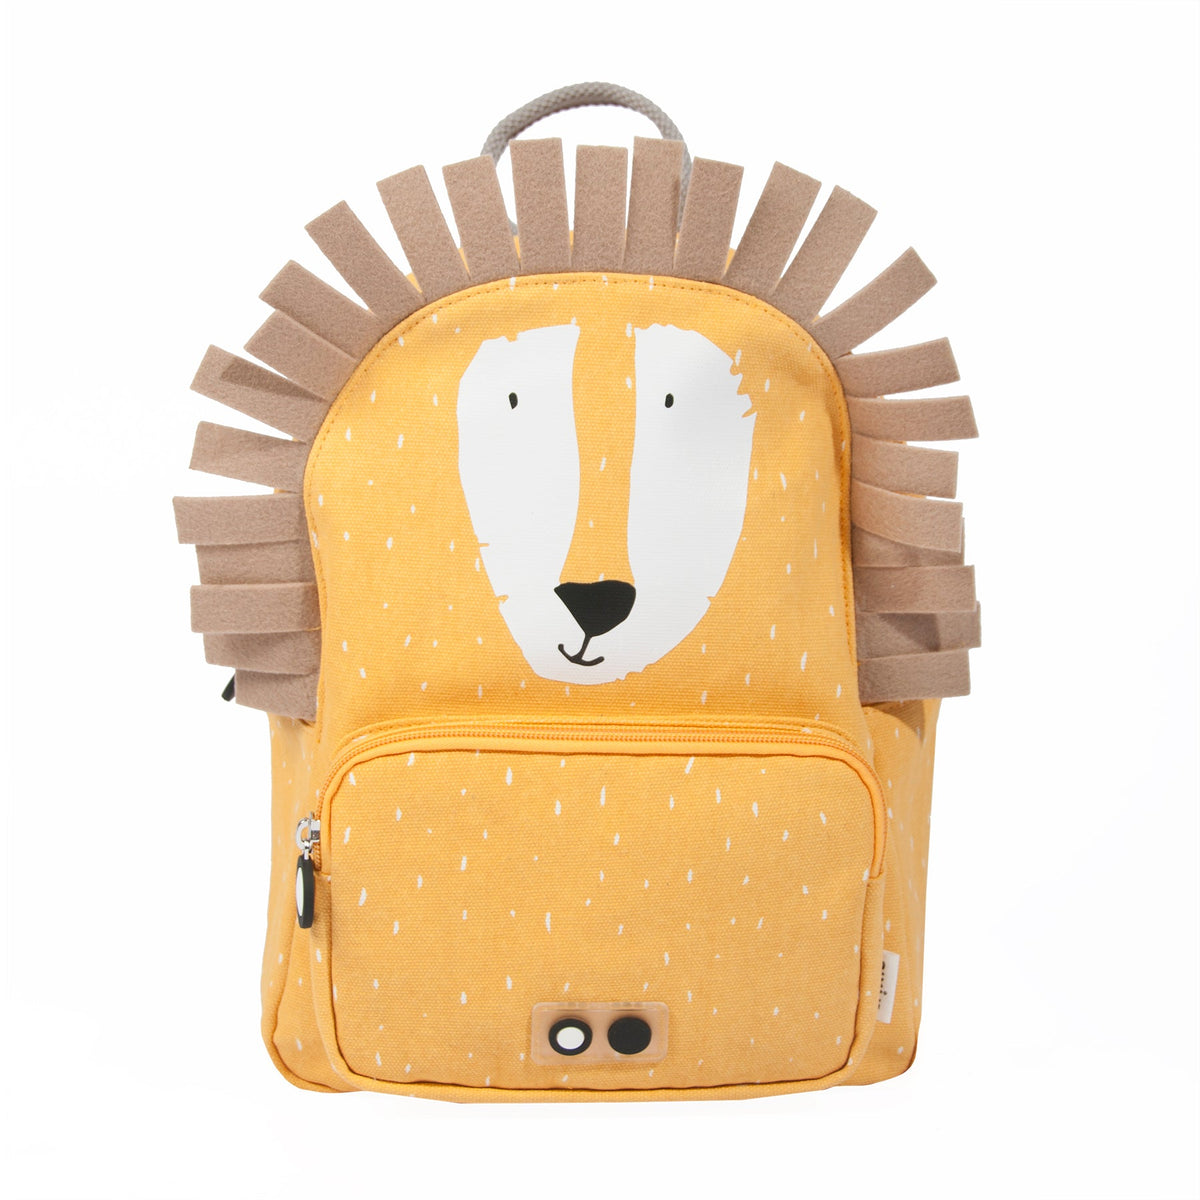 Backpack Mr. Lion - Koko-Kamel.com